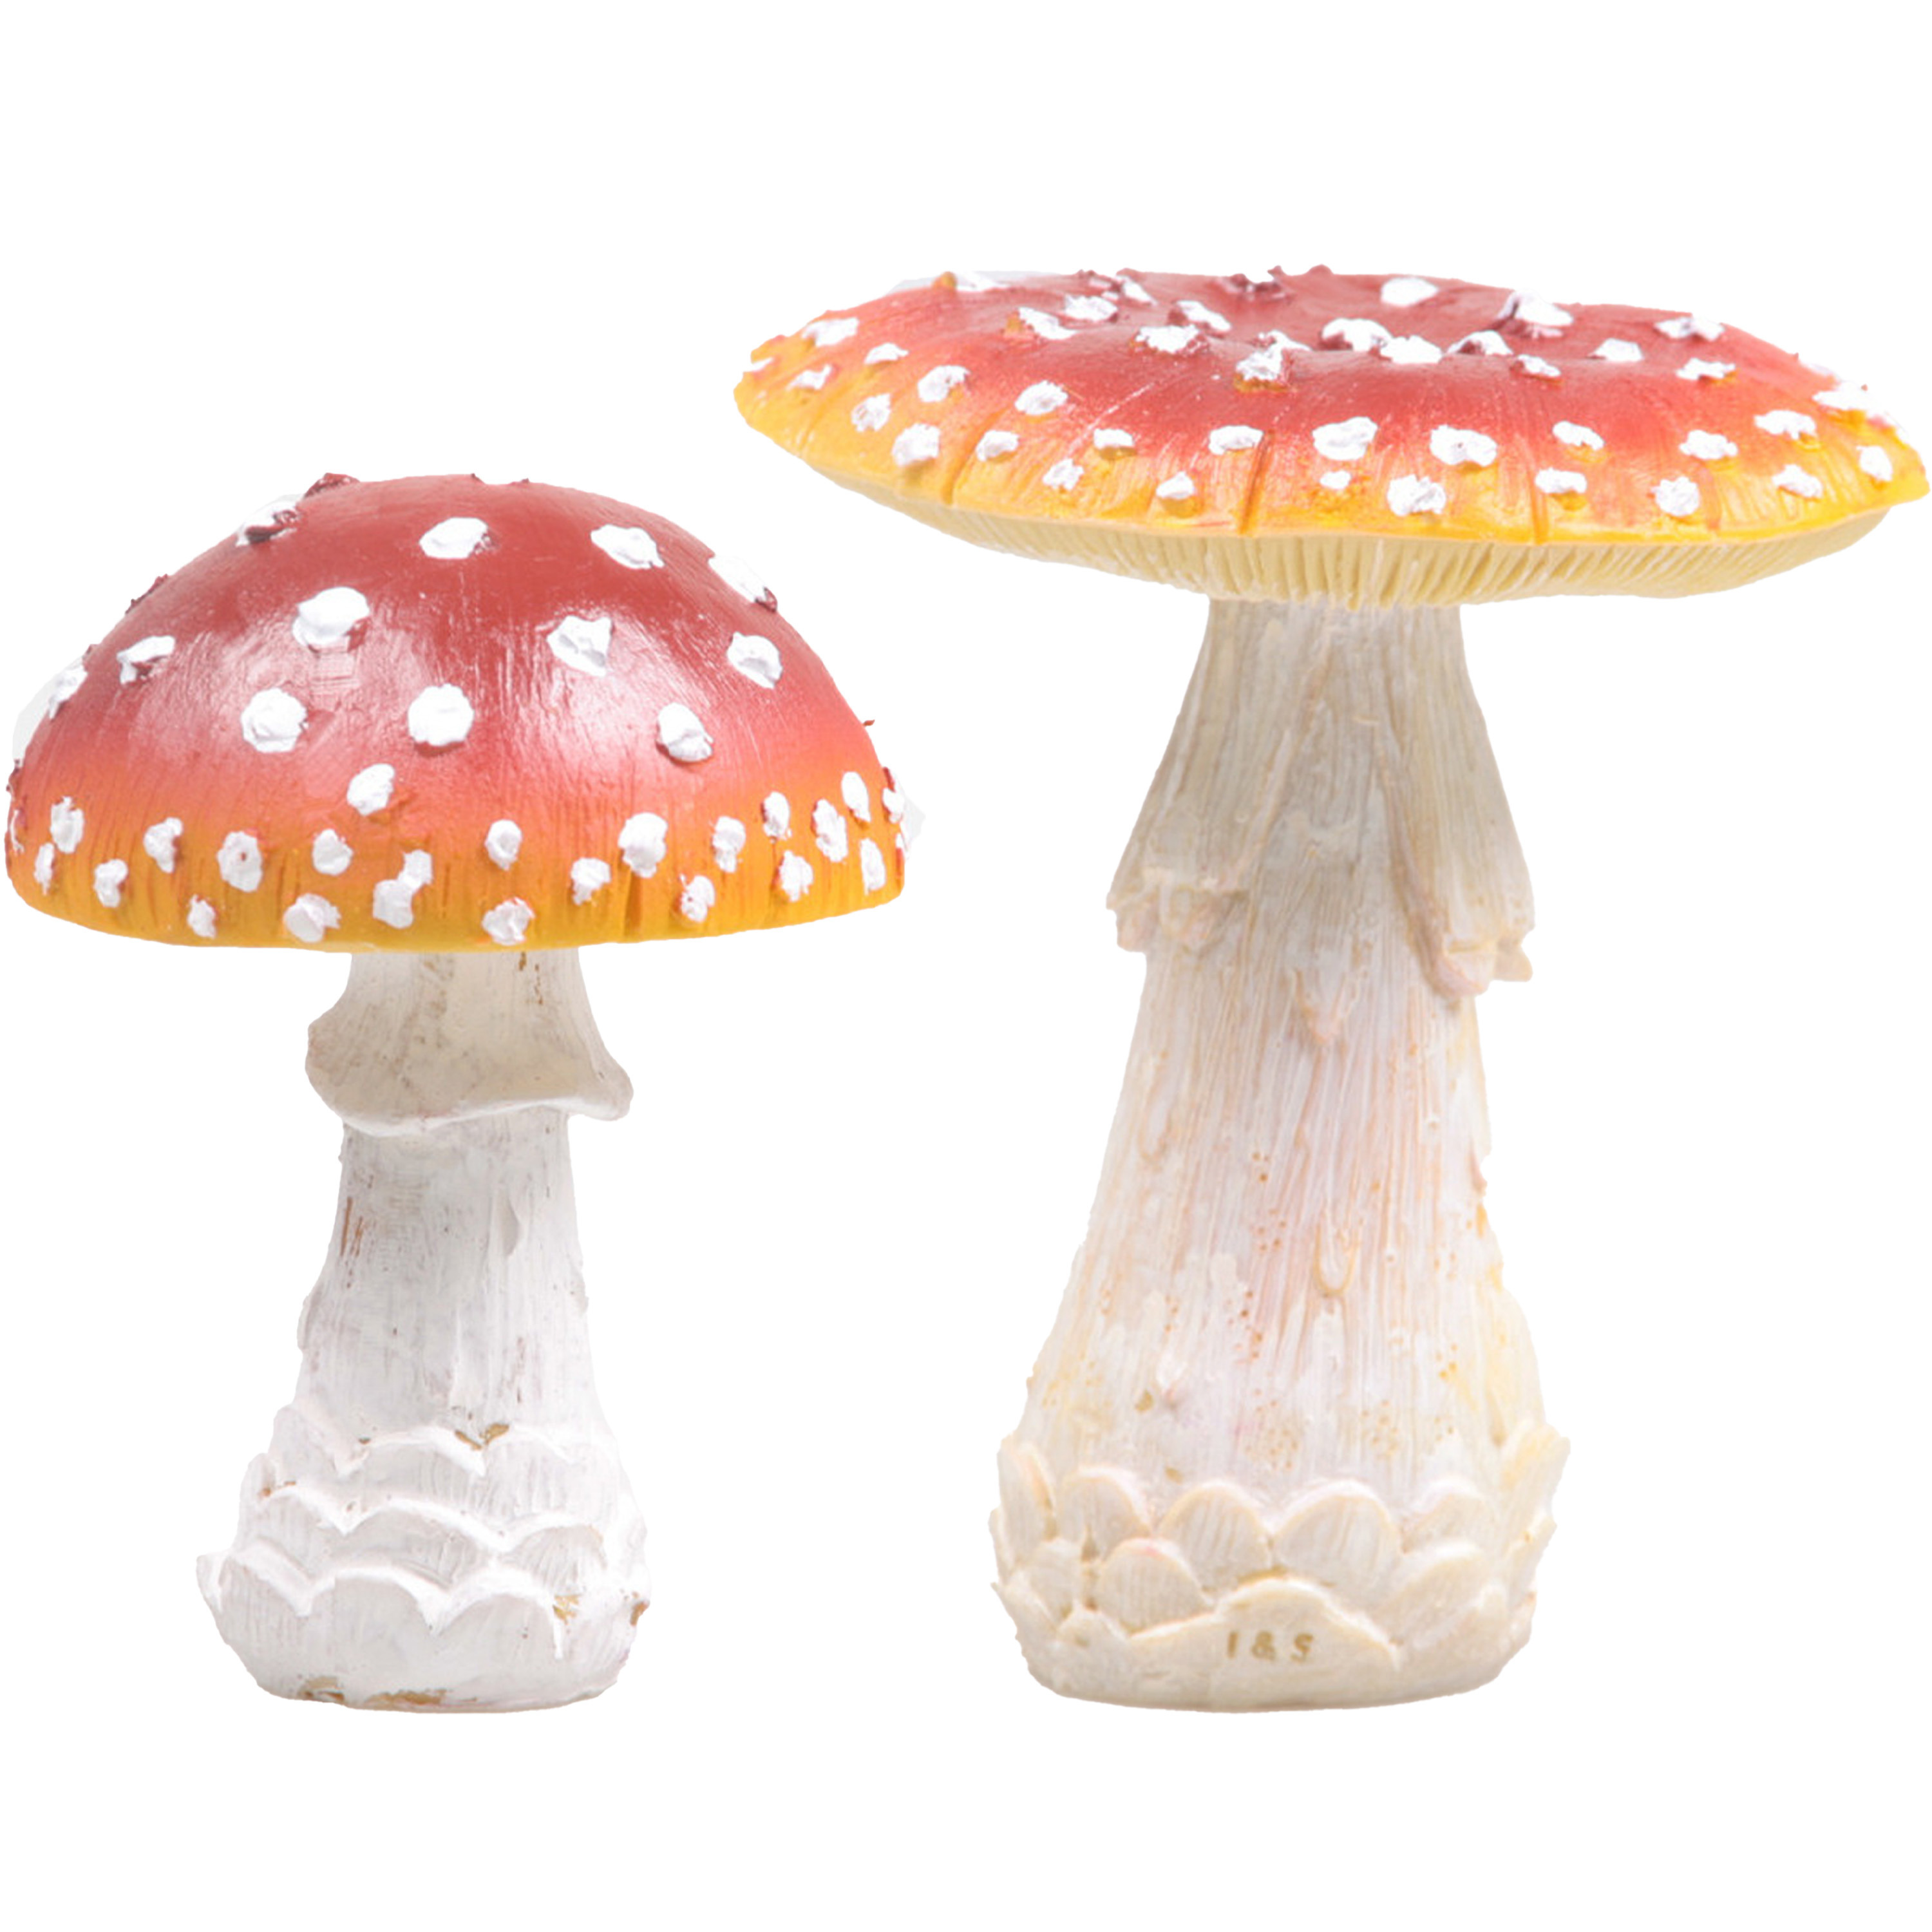 Decoratie paddenstoelen setje met 2x vliegenzwam paddenstoelen herfst thema